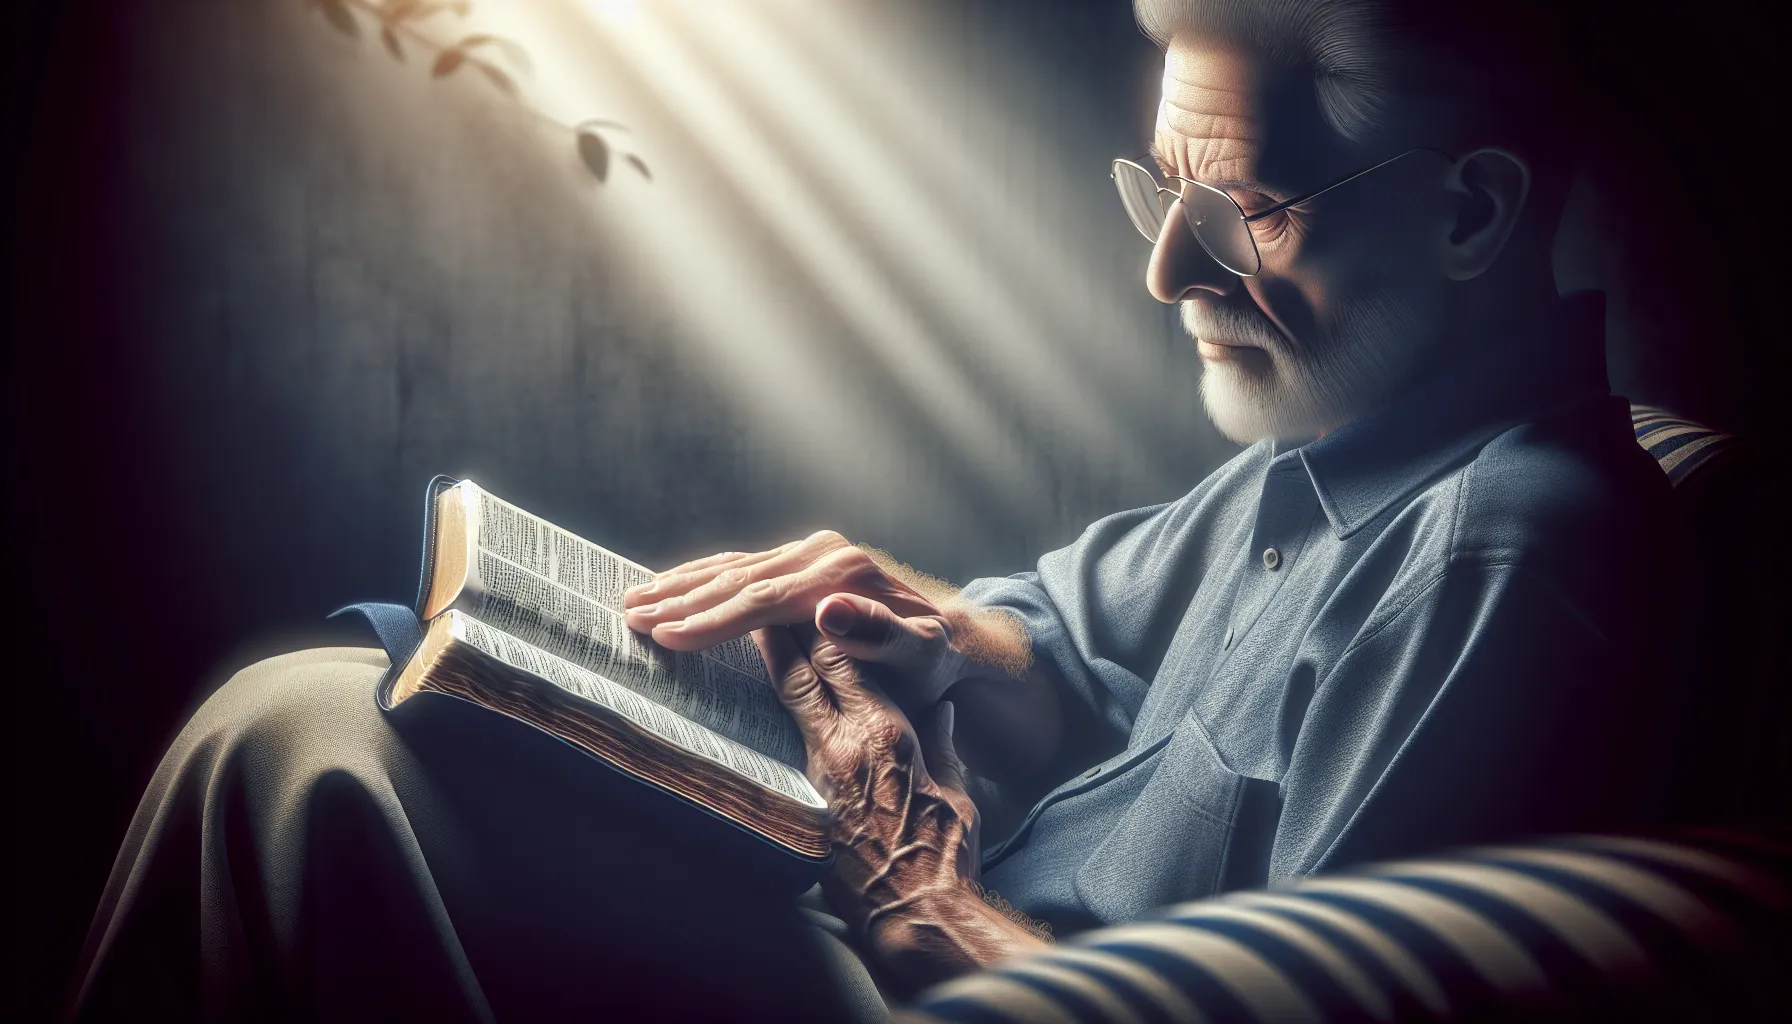 Imagen de una persona mayor leyendo la Biblia, simbolizando sabiduría y reflexión en el proceso de envejecer